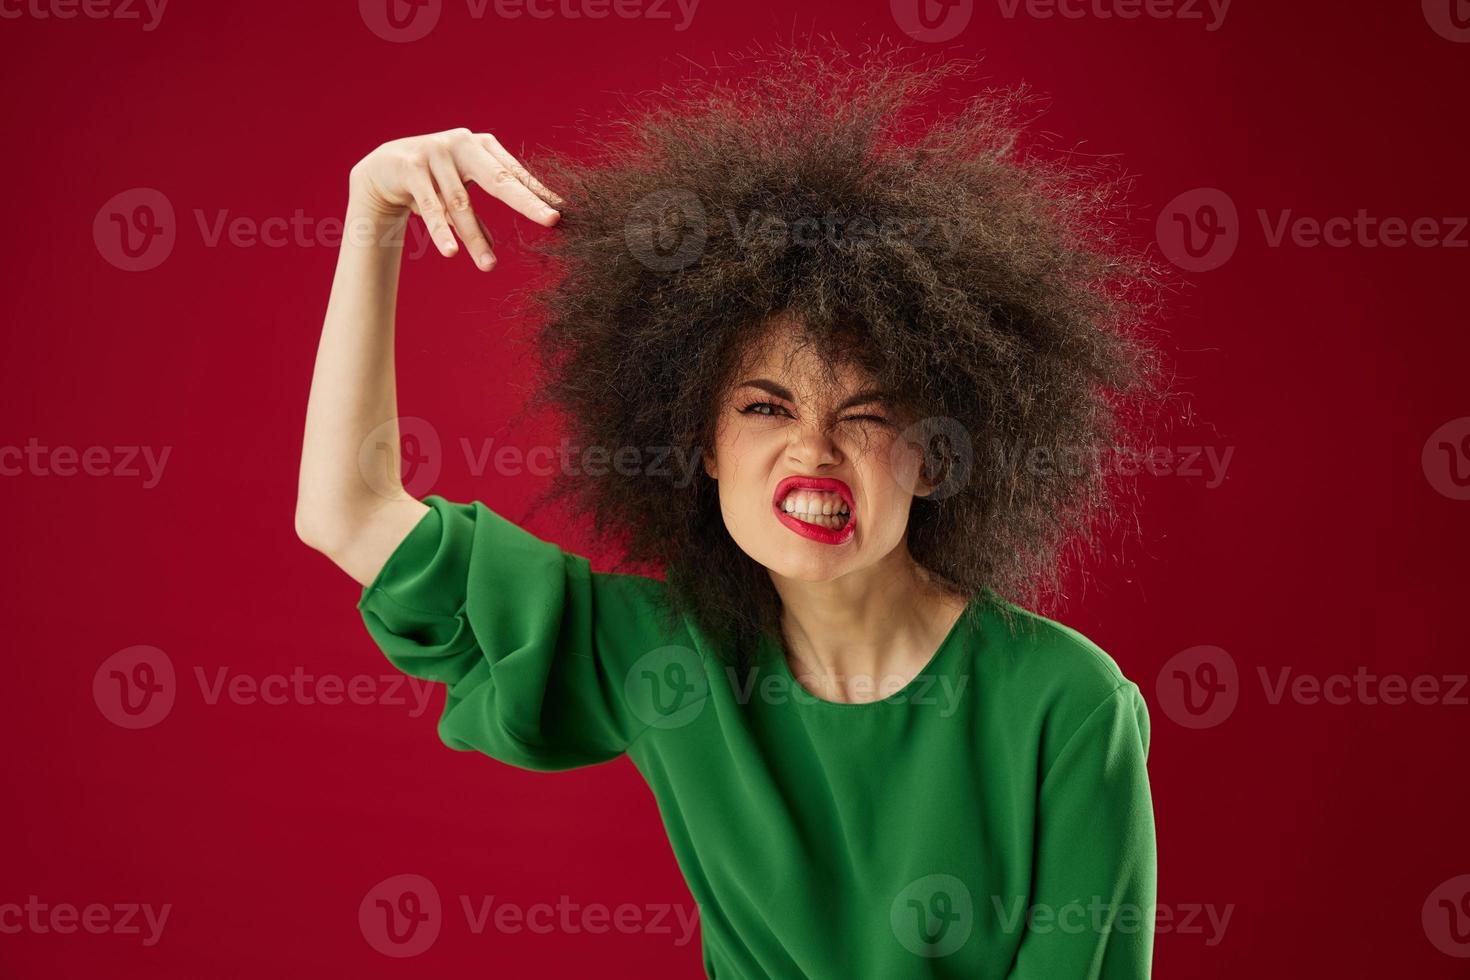 schön modisch Mädchen afro Frisur Grün Kleid Emotionen Nahansicht rot Hintergrund unverändert foto